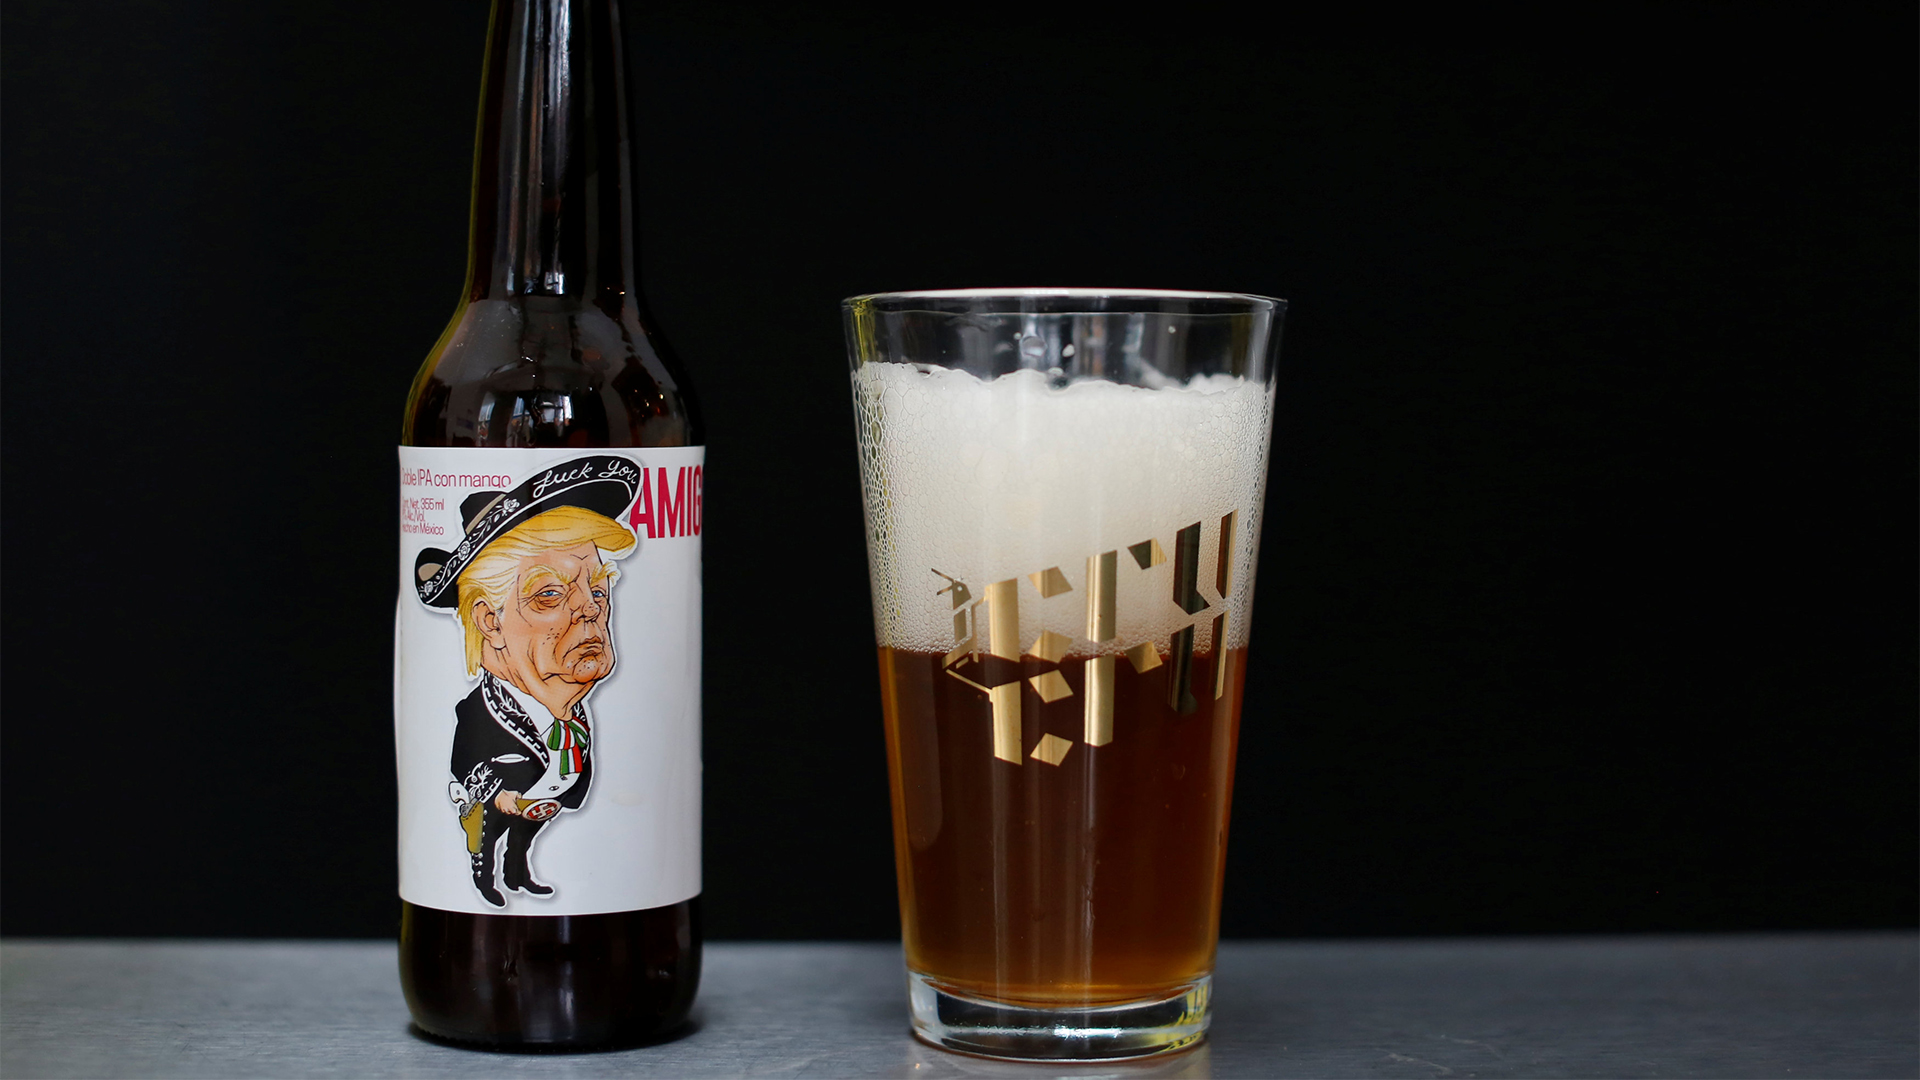 Bier mit dem Konterfei von Trump auf dem Etikett | REUTERS